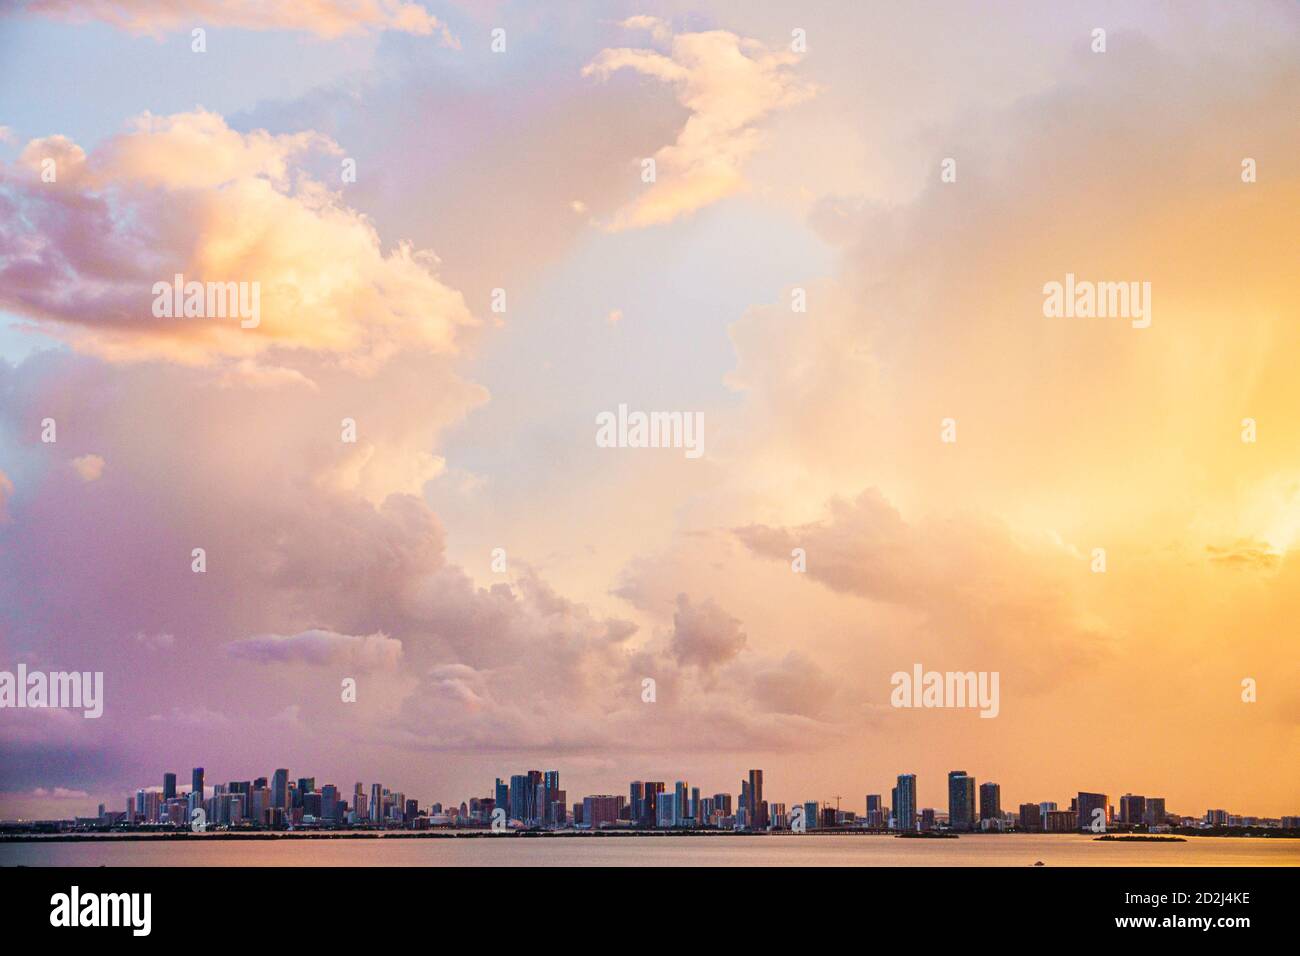 Miami Florida, Biscayne Bay Water, skyline della città, nuvole cielo tempo tramonto, visitatori viaggio viaggio viaggio turismo turistico punto di riferimento cultura culto Foto Stock